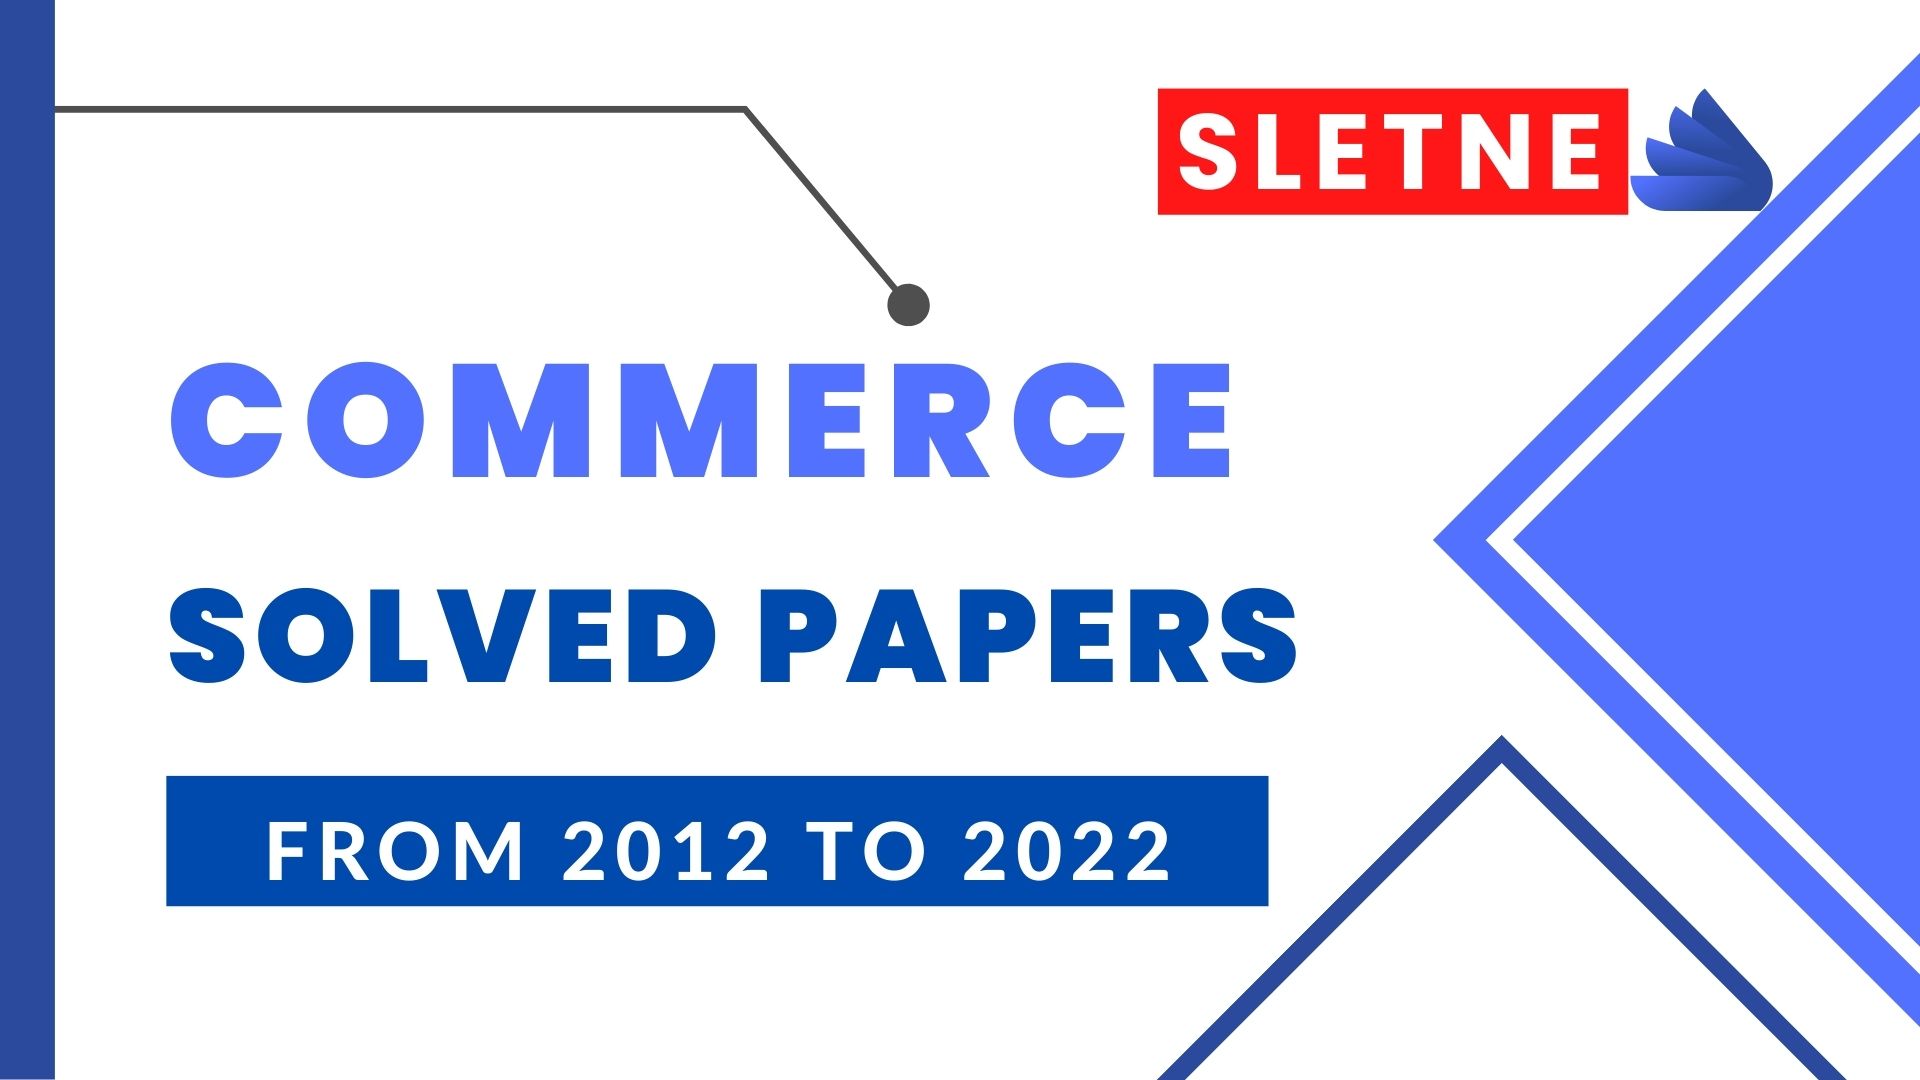 slet ne commerce solved paper 2021